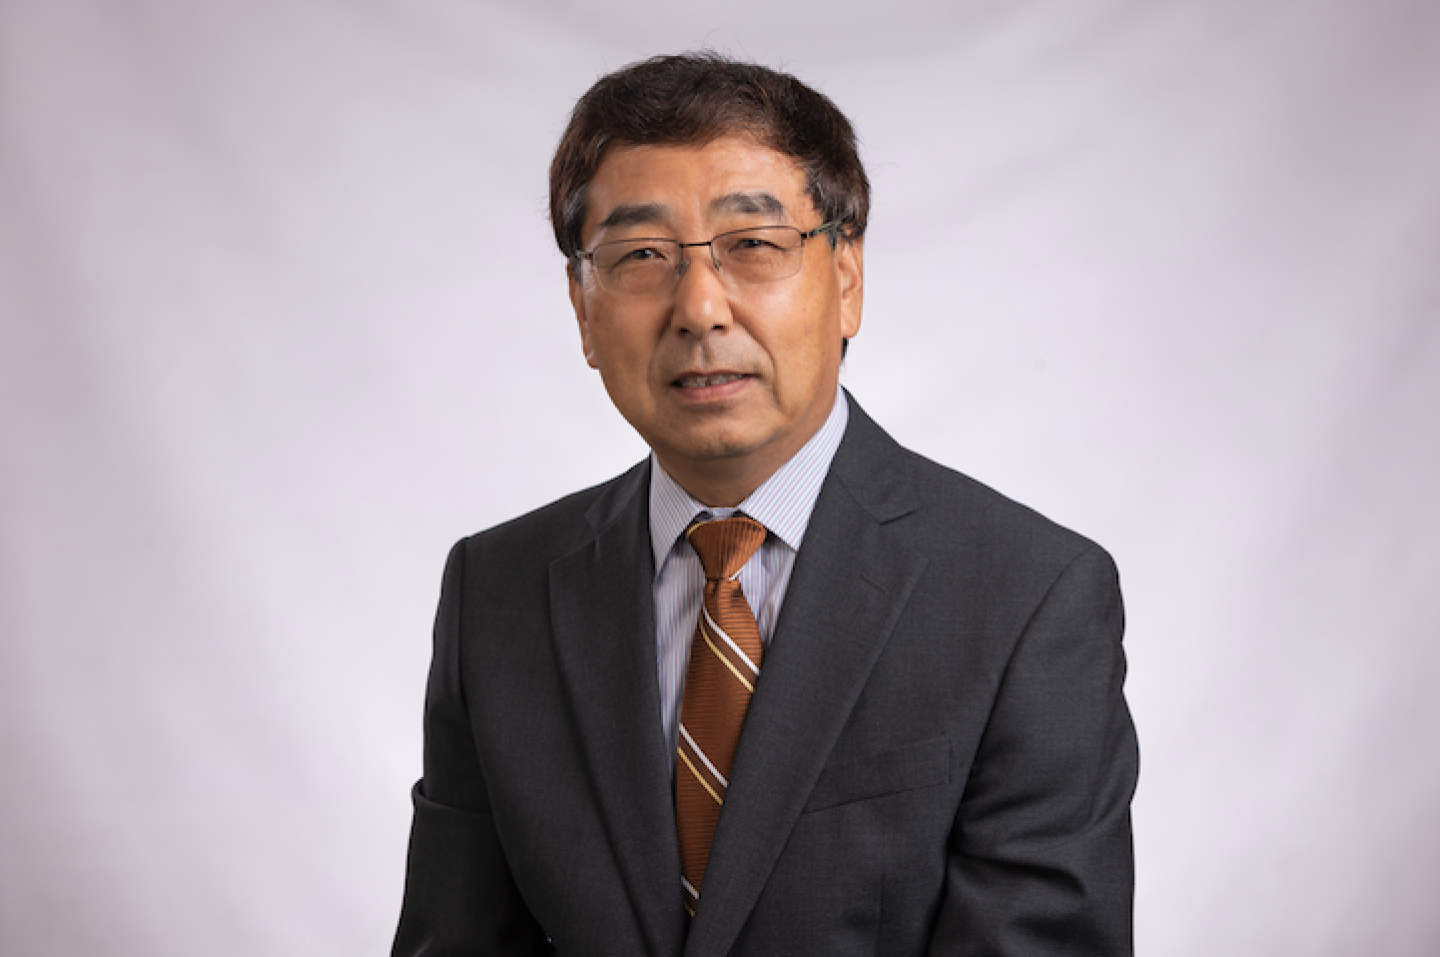 Dr. Yuanlong Liu